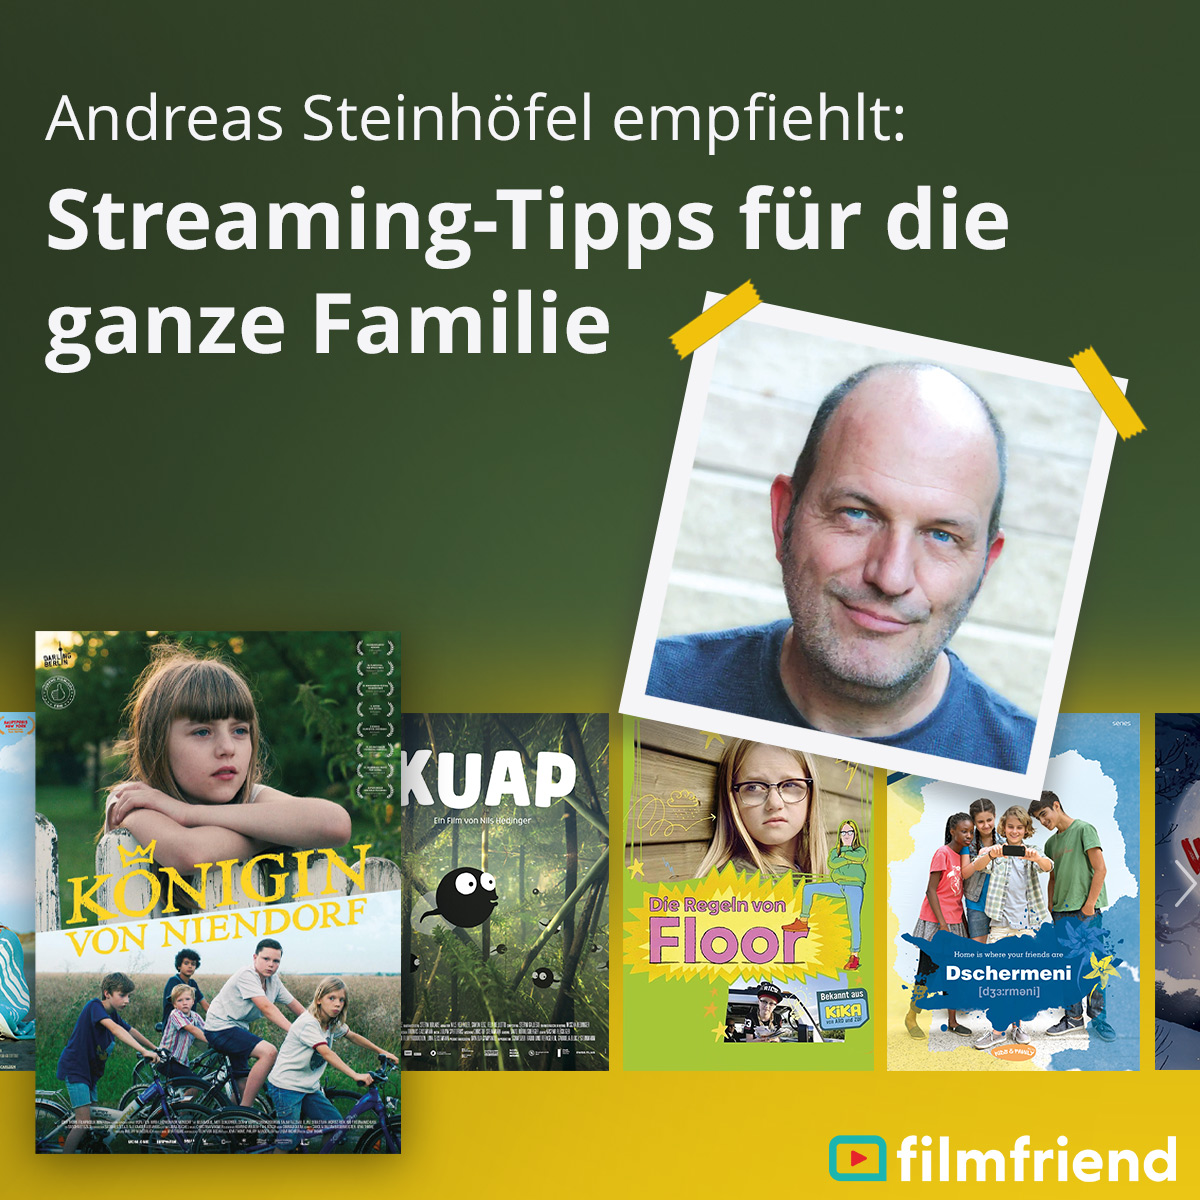 {#1_Andreas Steinhoefel empfiehlt}